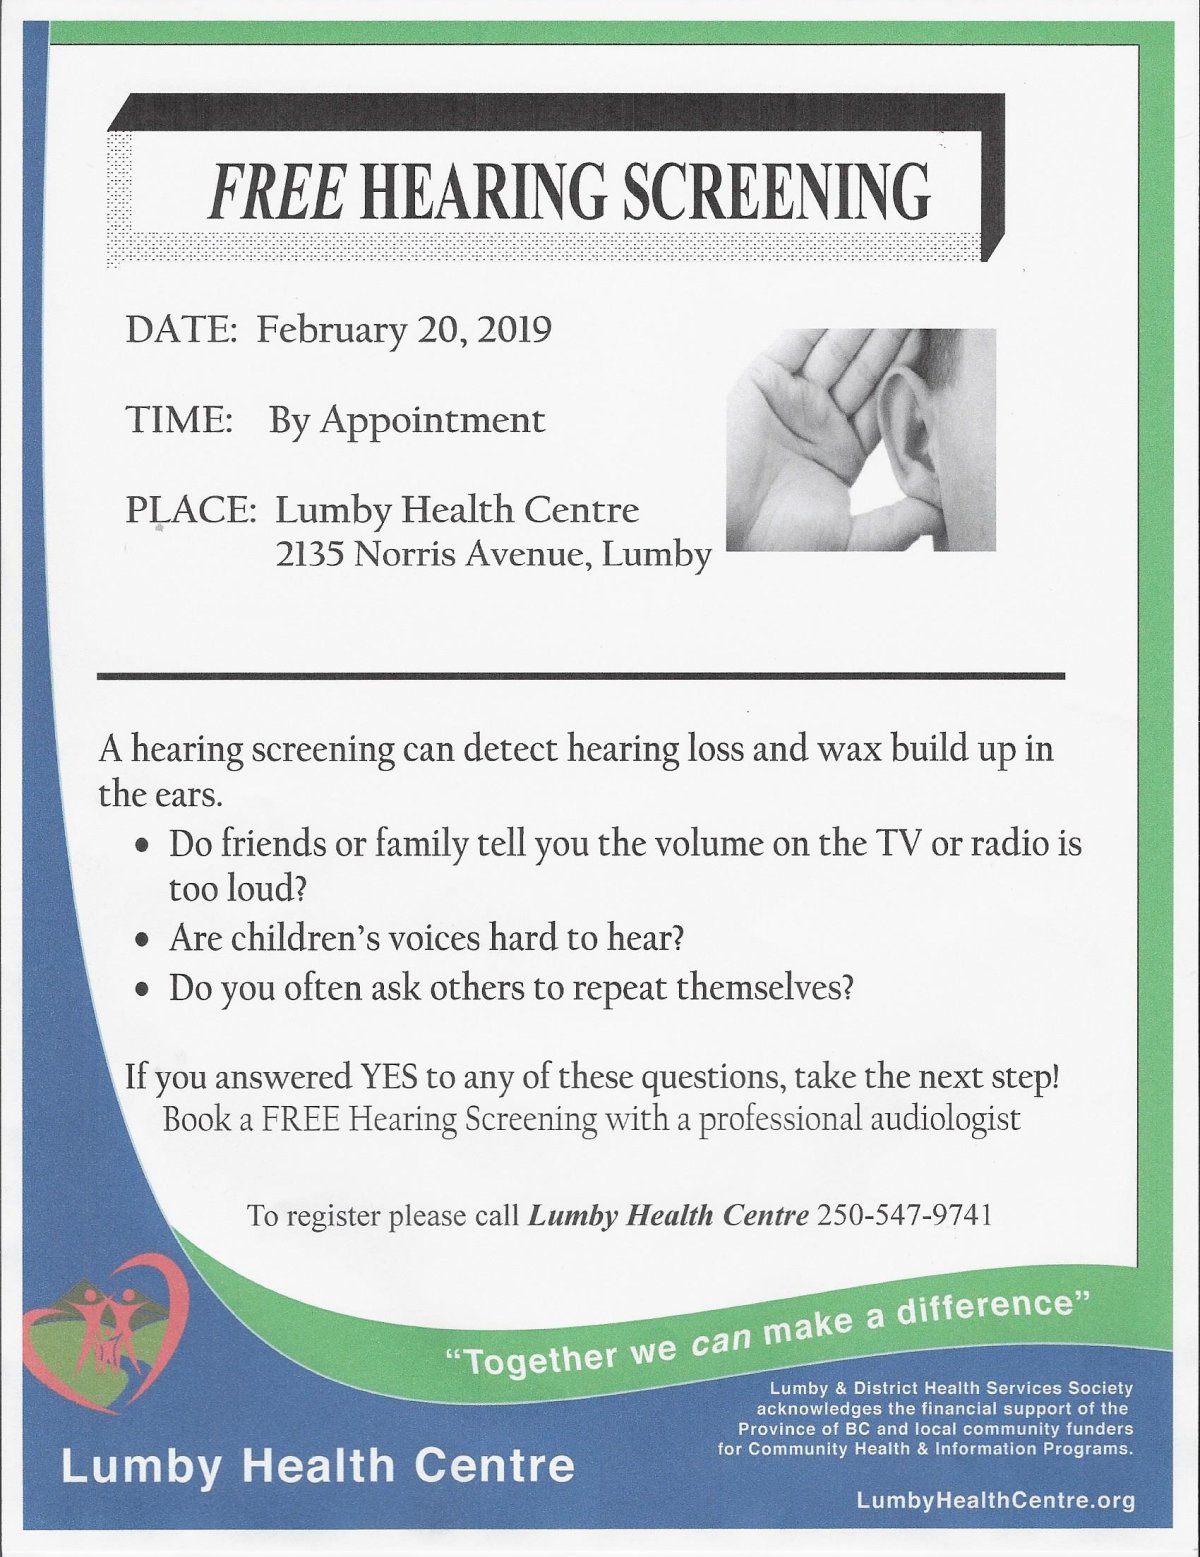 Free Hearing Screening - image